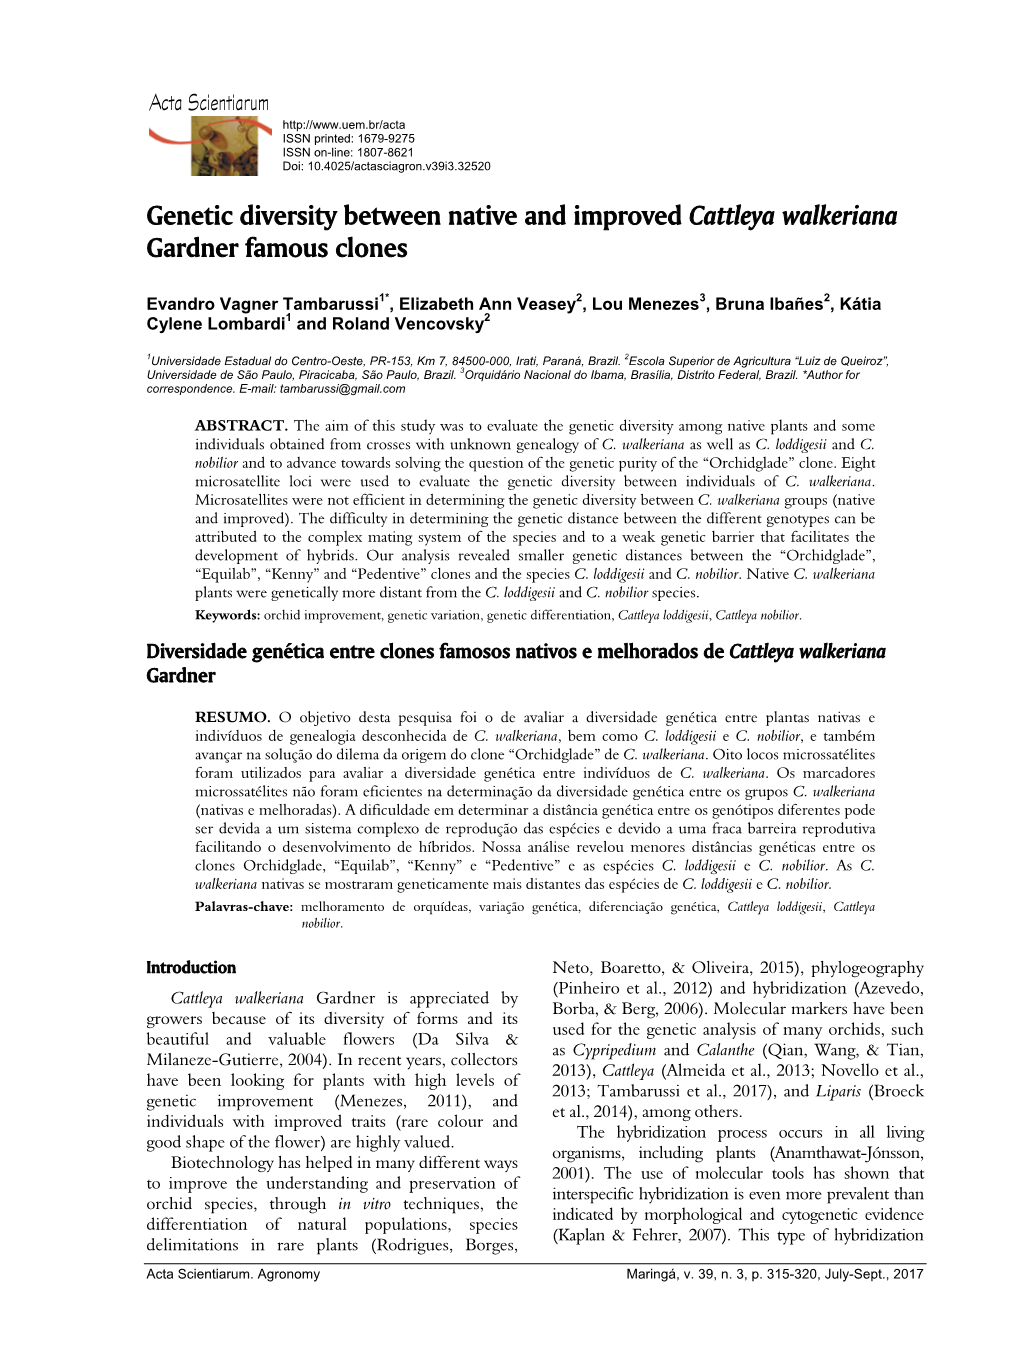 Genetic Diversity Between Native and Improved Cattleya Walkeriana Gardner Famous Clones